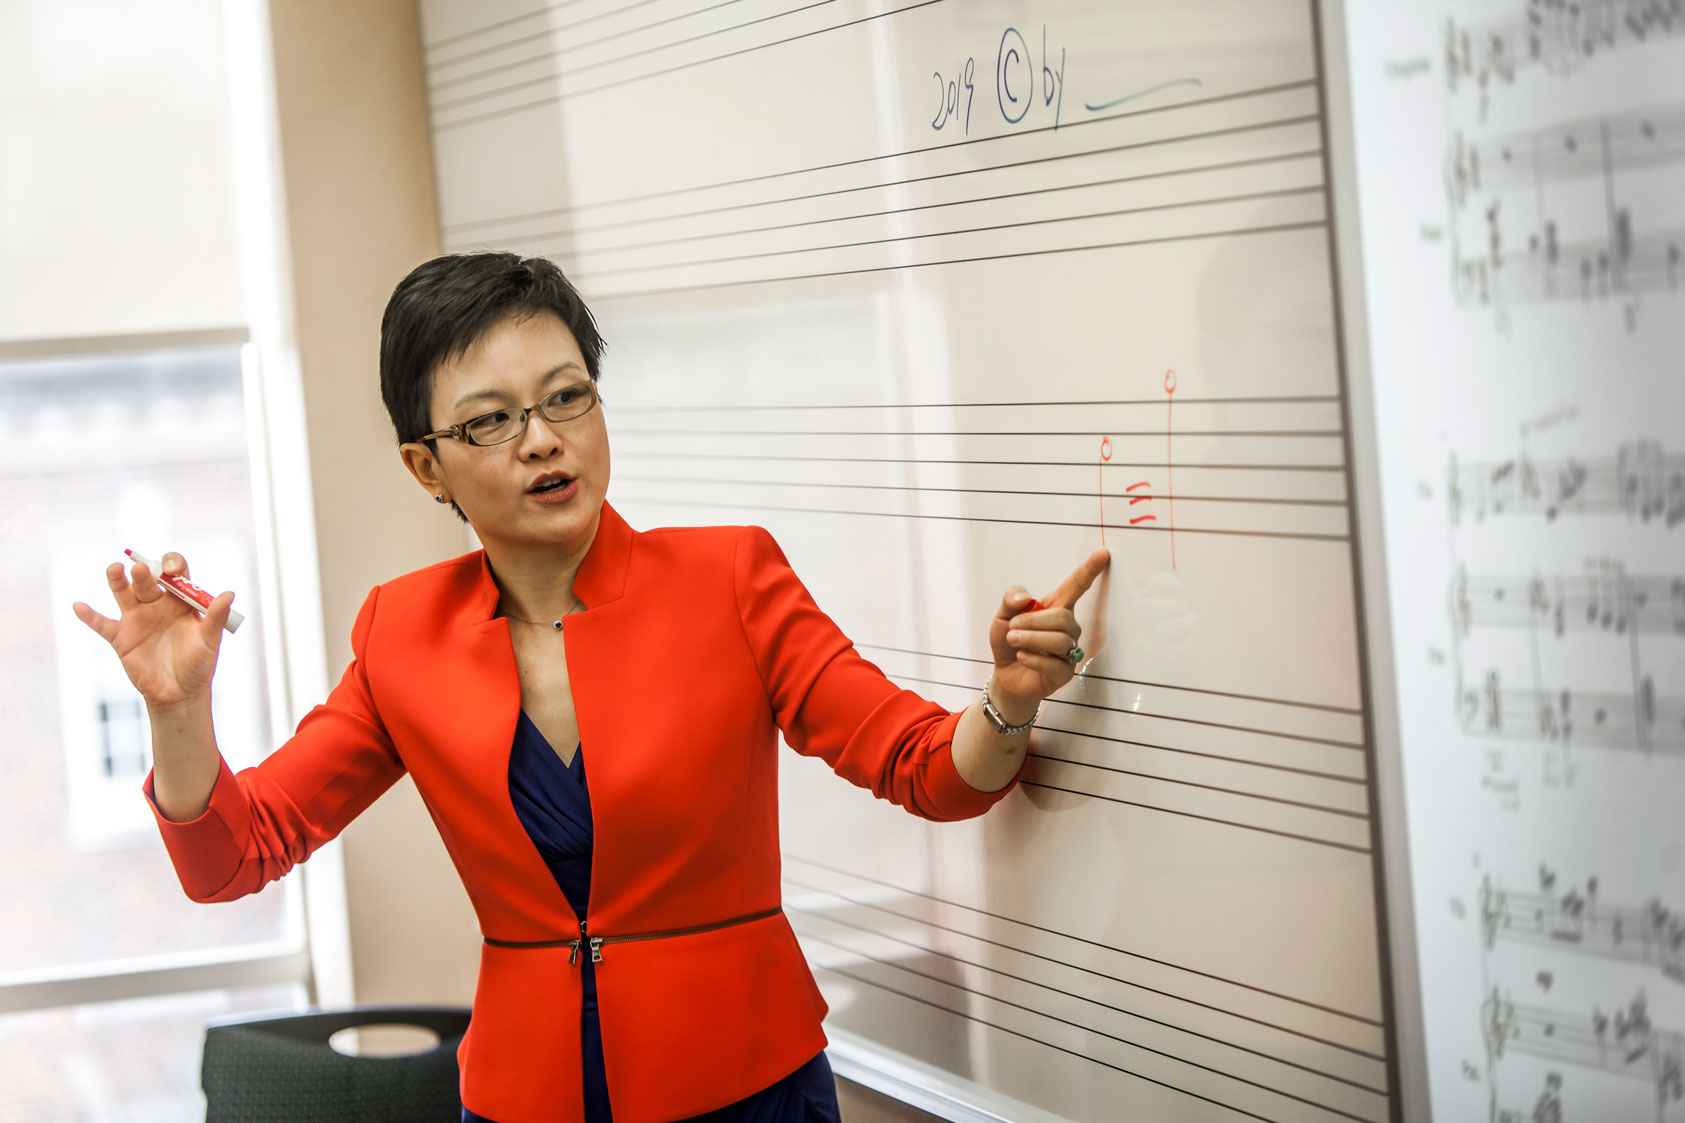 Guggenheim Fellow Professor Xi Wang teaches a music composition class at Meadows.